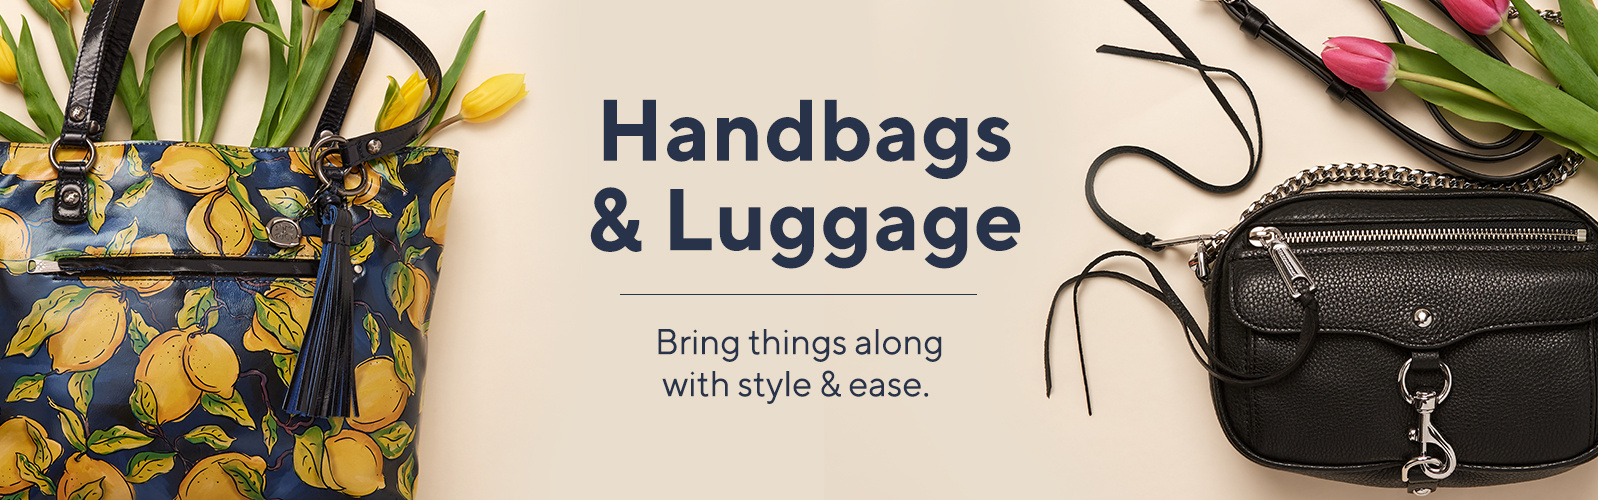 Handbags & Luggage - QVC.com